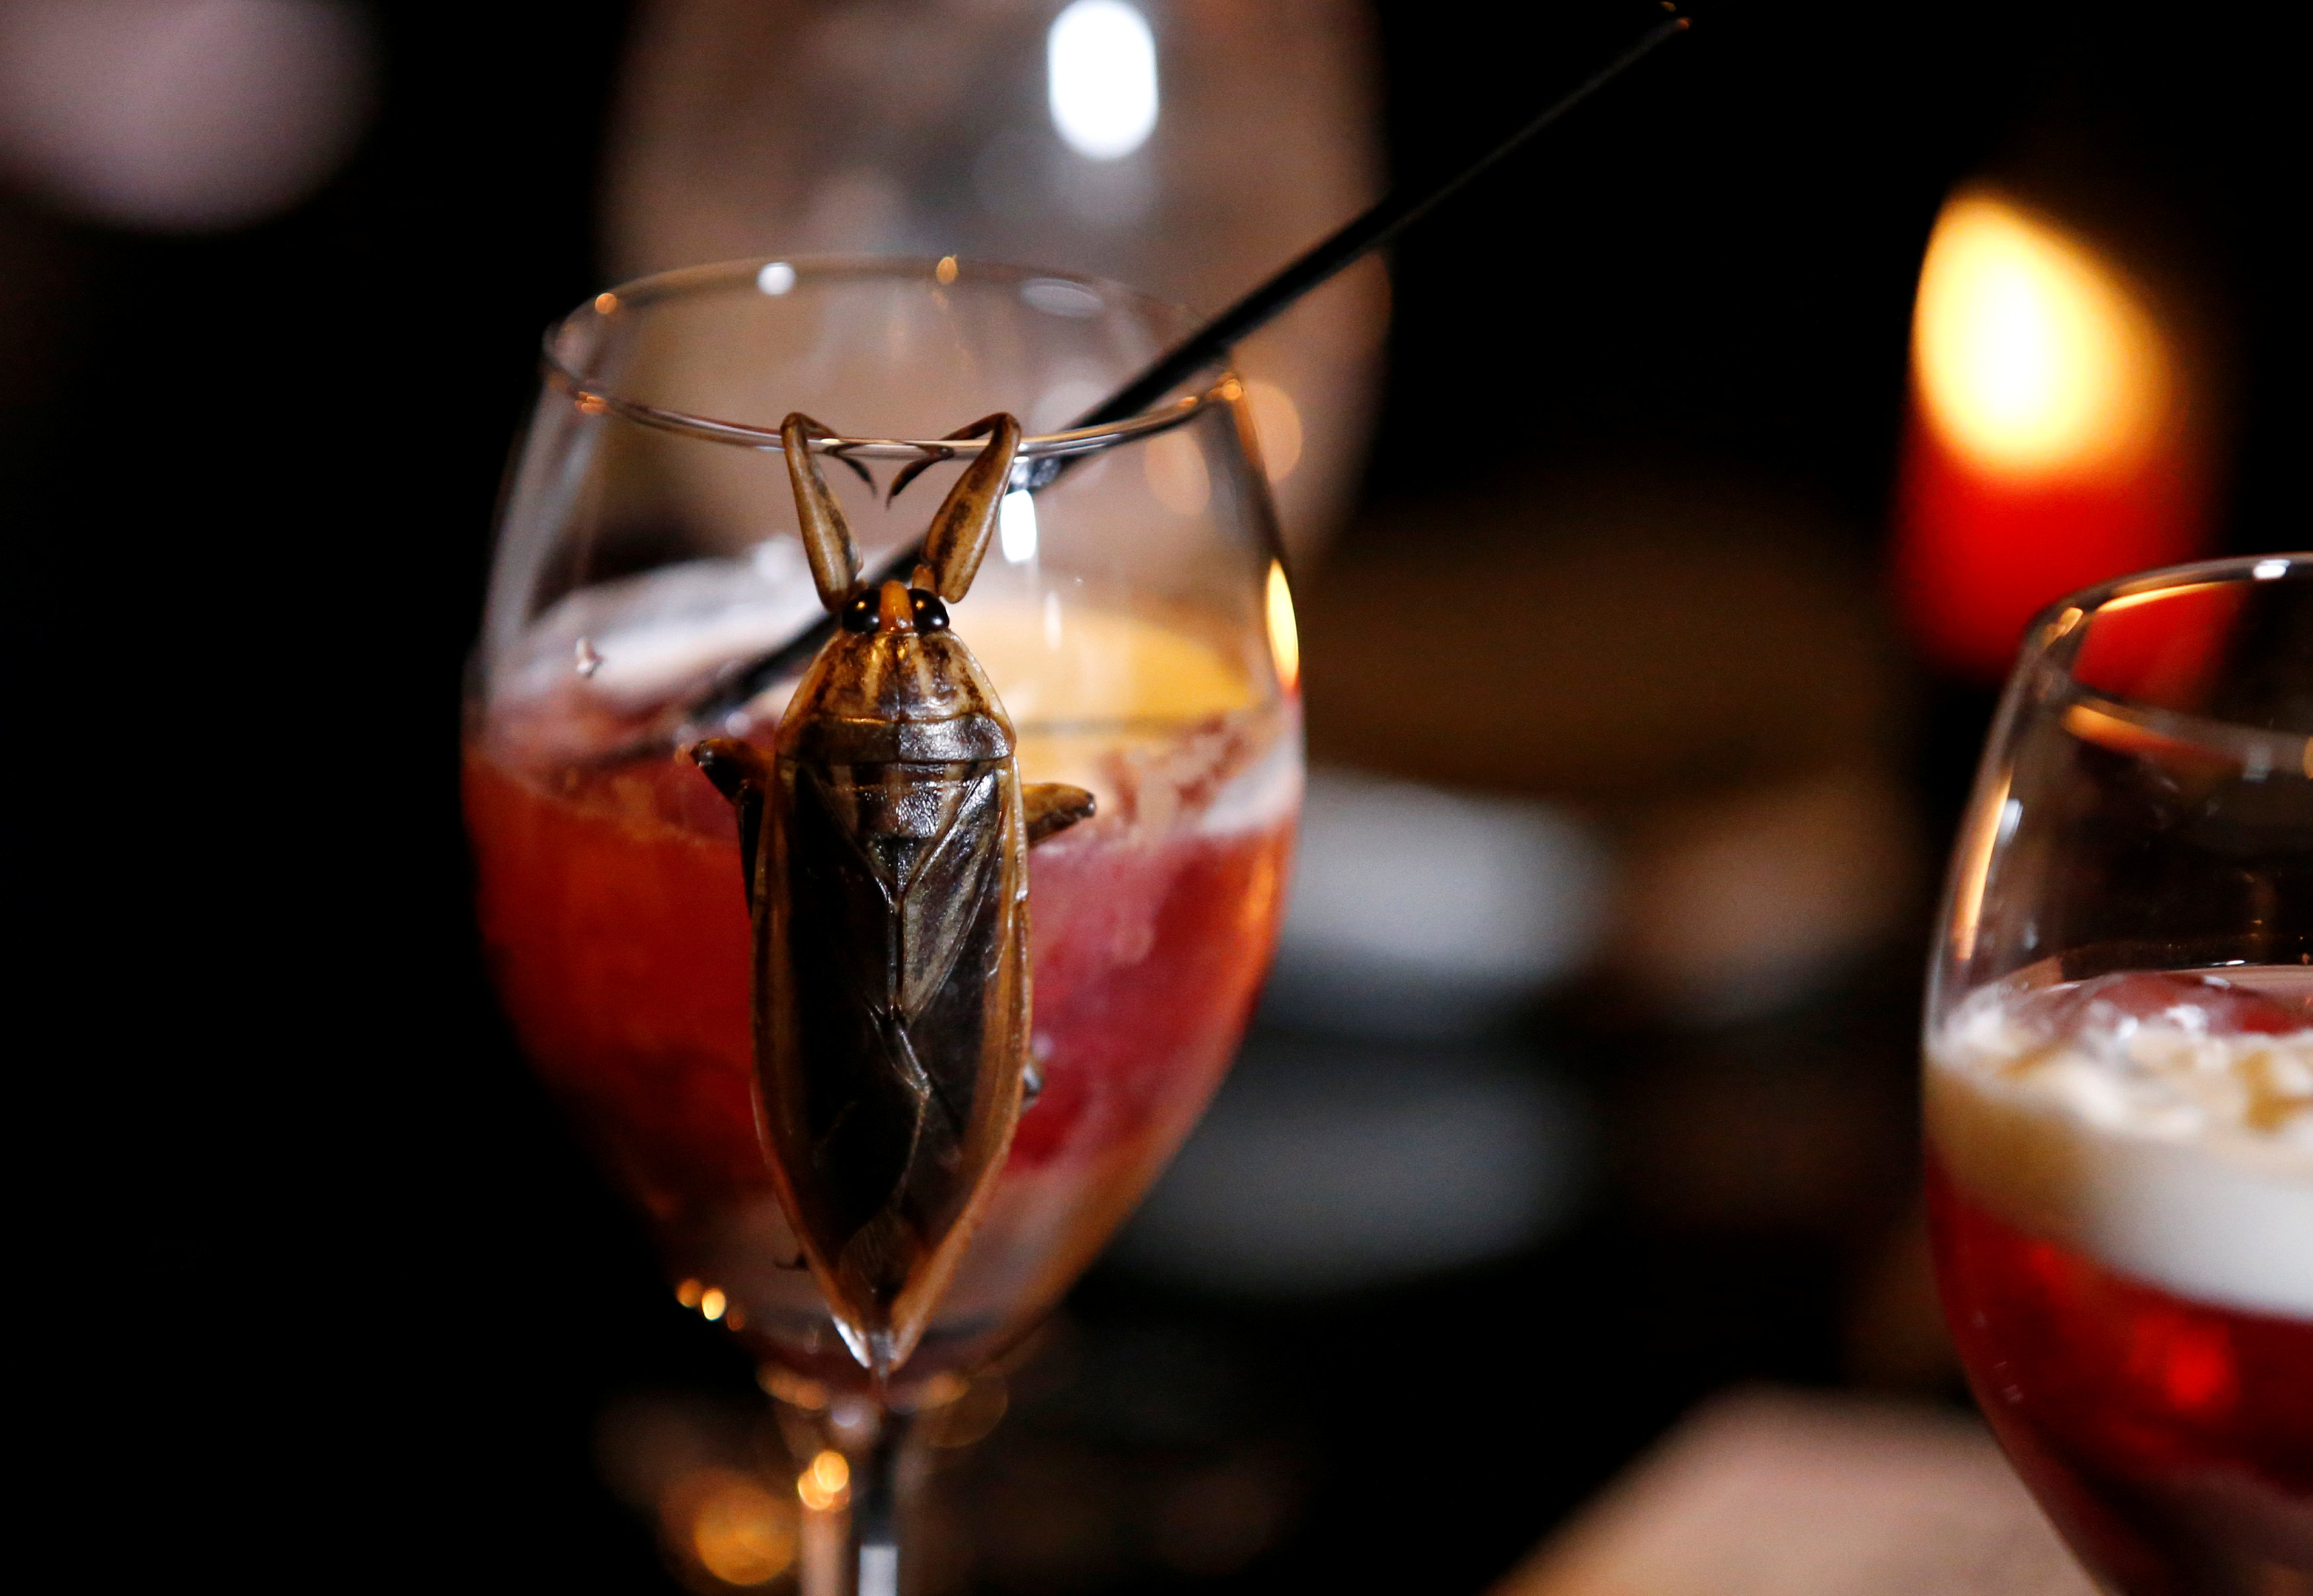 مشروب كوكتيل يحتوى حشرات فى احتفالات عيد الحب باليابان